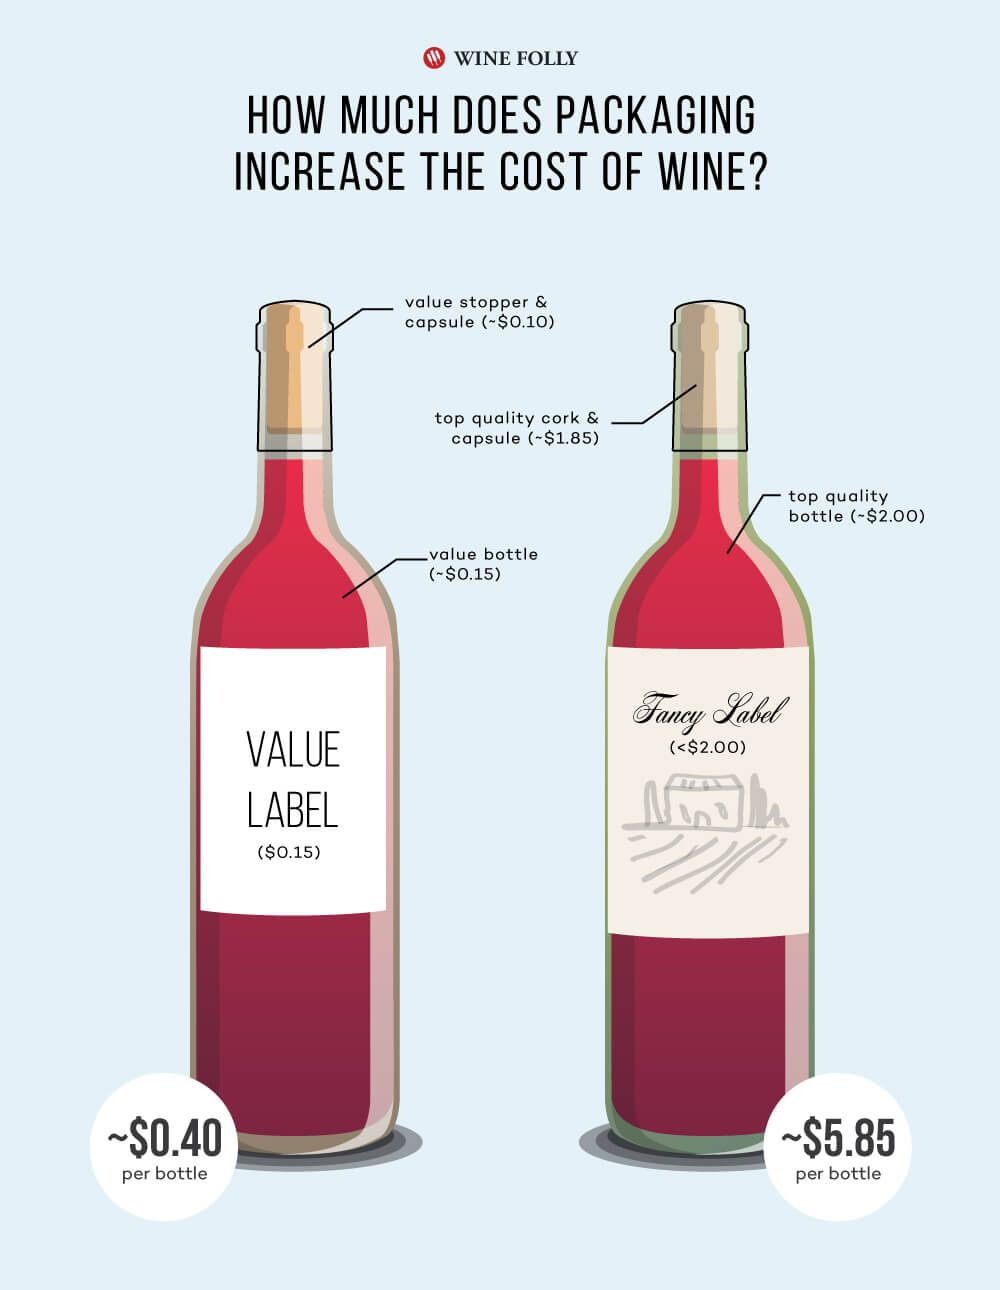 Vyno pakavimo kaina ir kaip tai daro įtaką vyno butelio kainai - 2019 m. „Wine Folly“ infografika